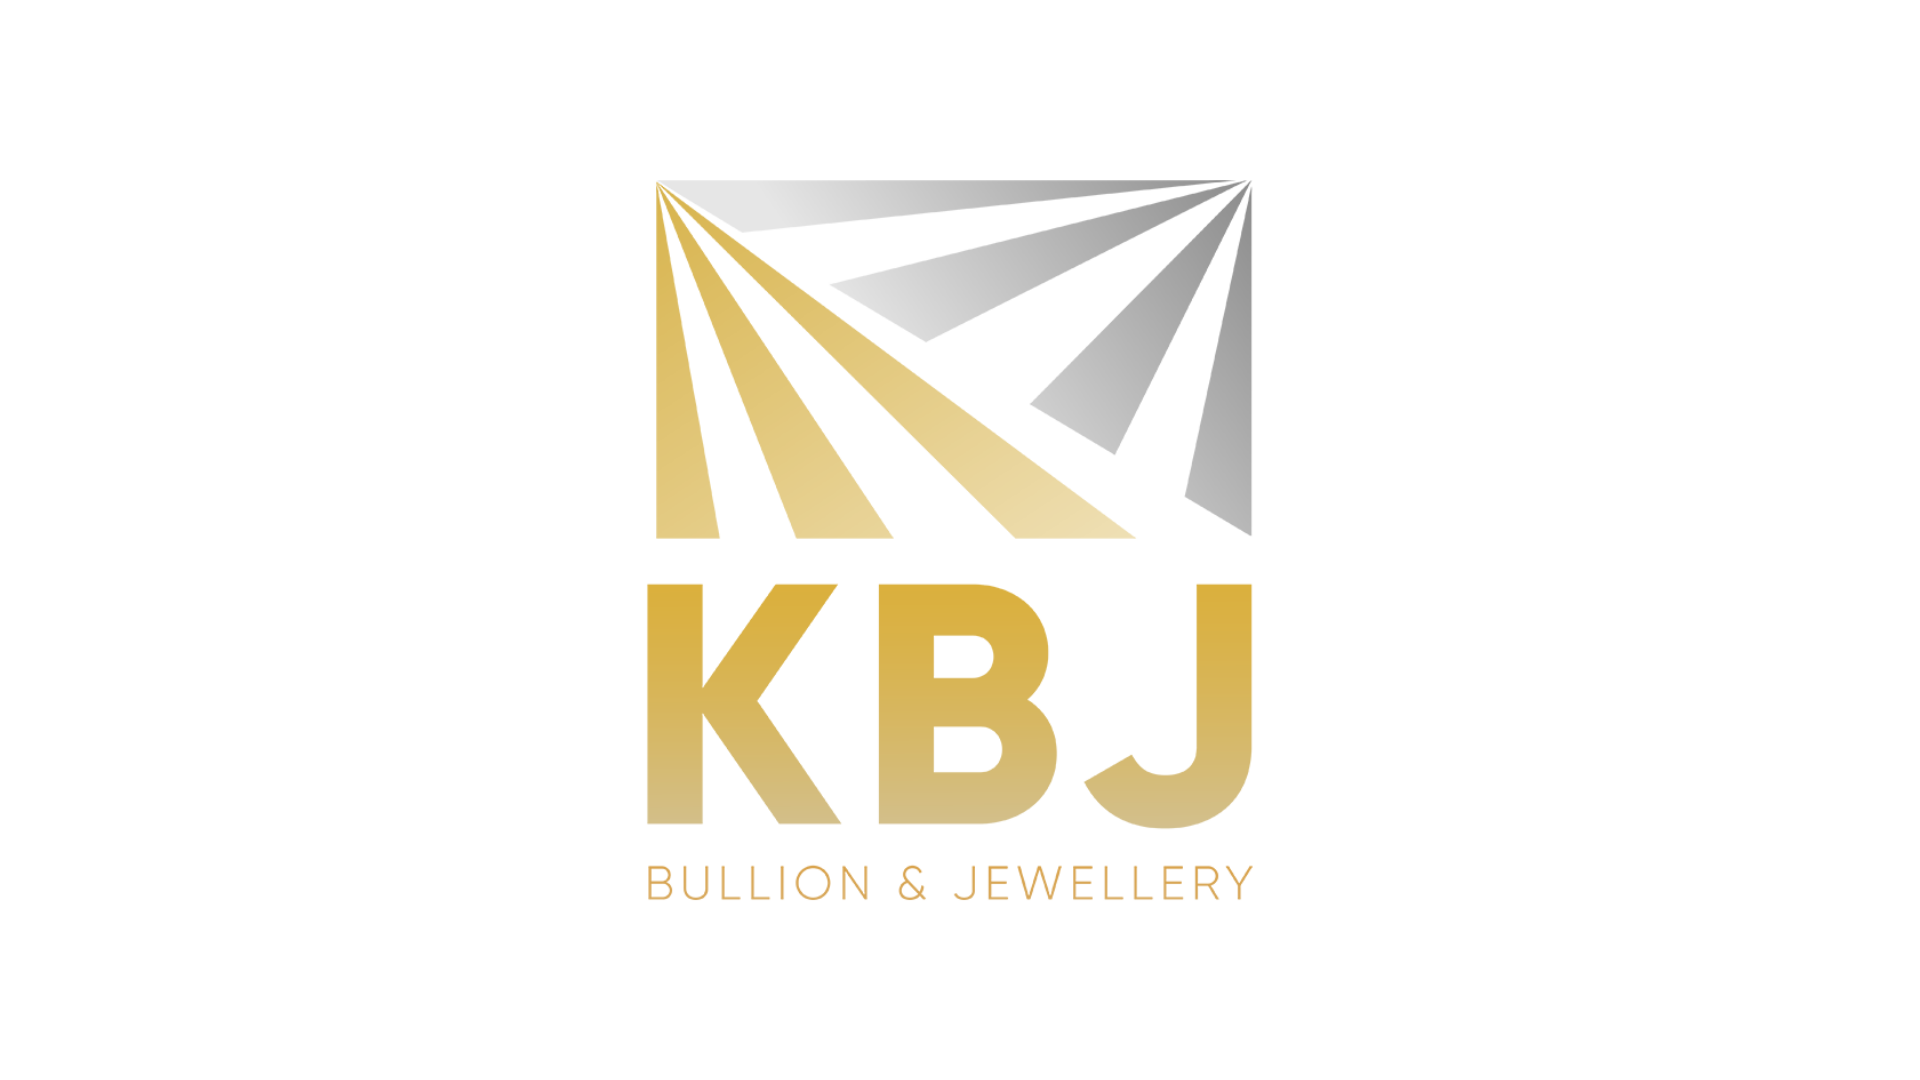 KBJ Group expands in KBJ Bullion & Jewelry, set to establish a pan-India franchise